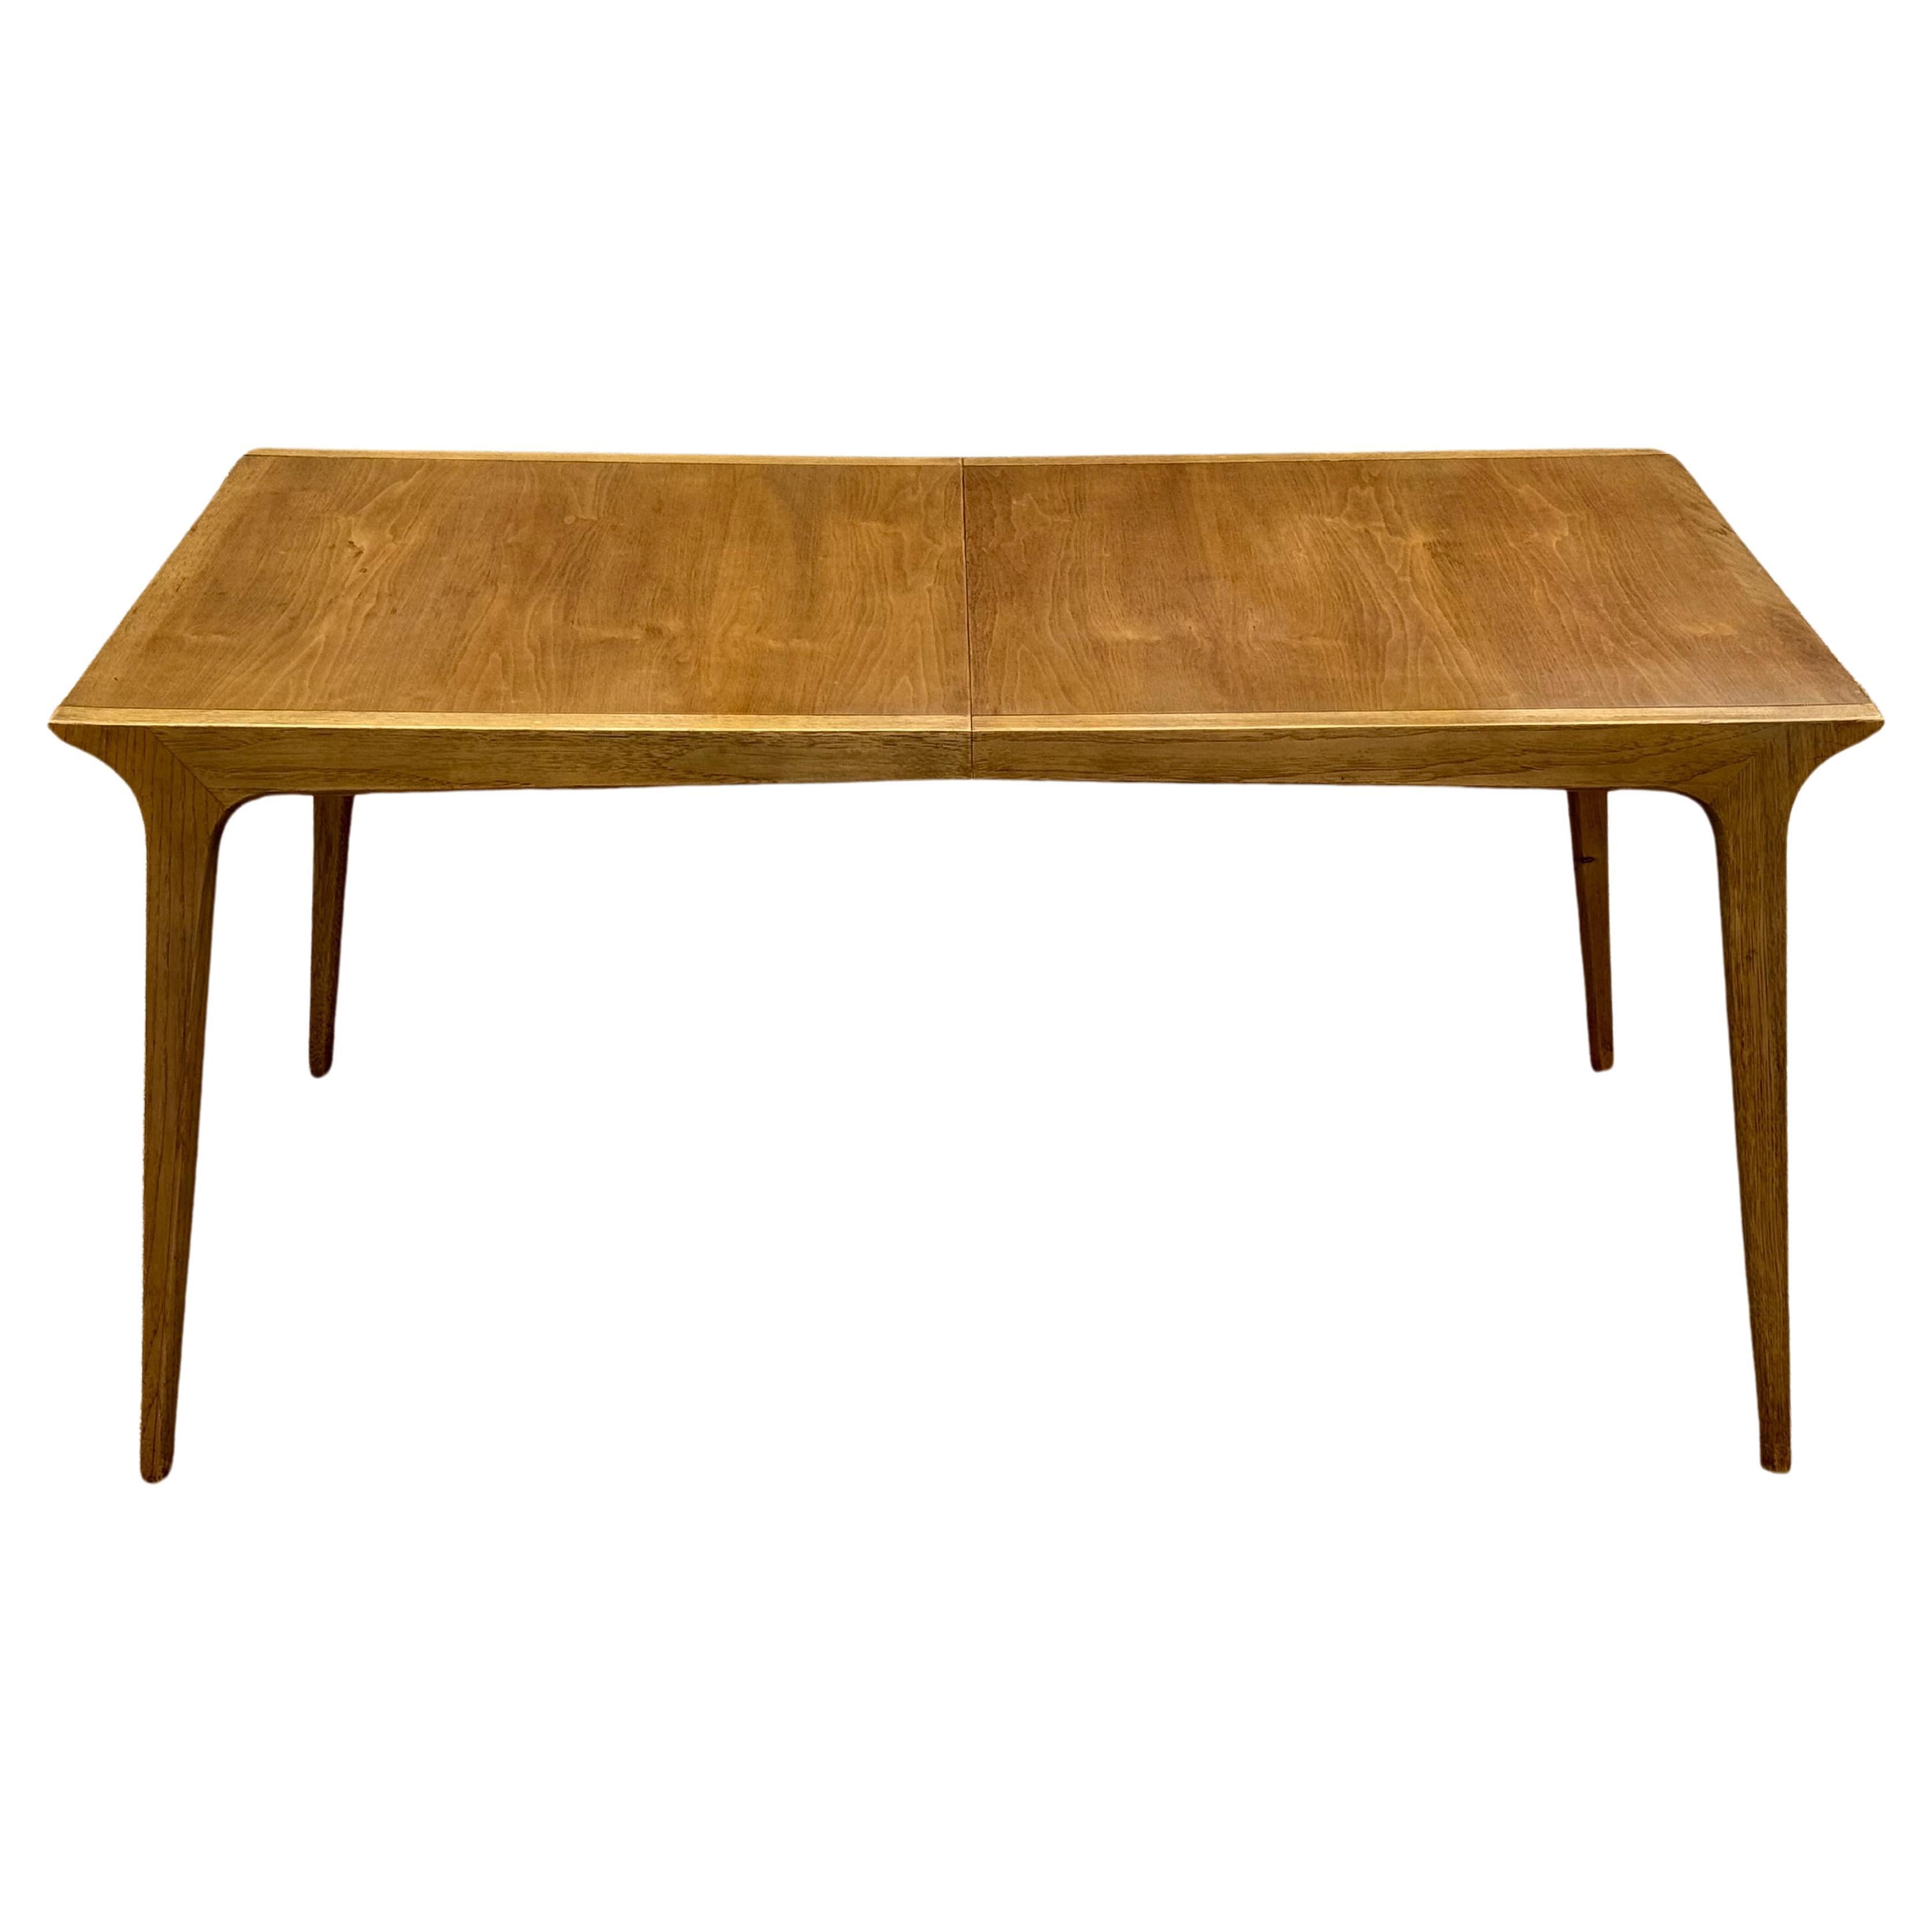 John Van Koert pour Drexel a conçu le modèle de table de salle à manger K-42-4, aux formes architecturales sculpturales et sophistiquées, qui fait partie de la série classique Profile. Cette grande table à rallonge en noyer est livrée avec trois